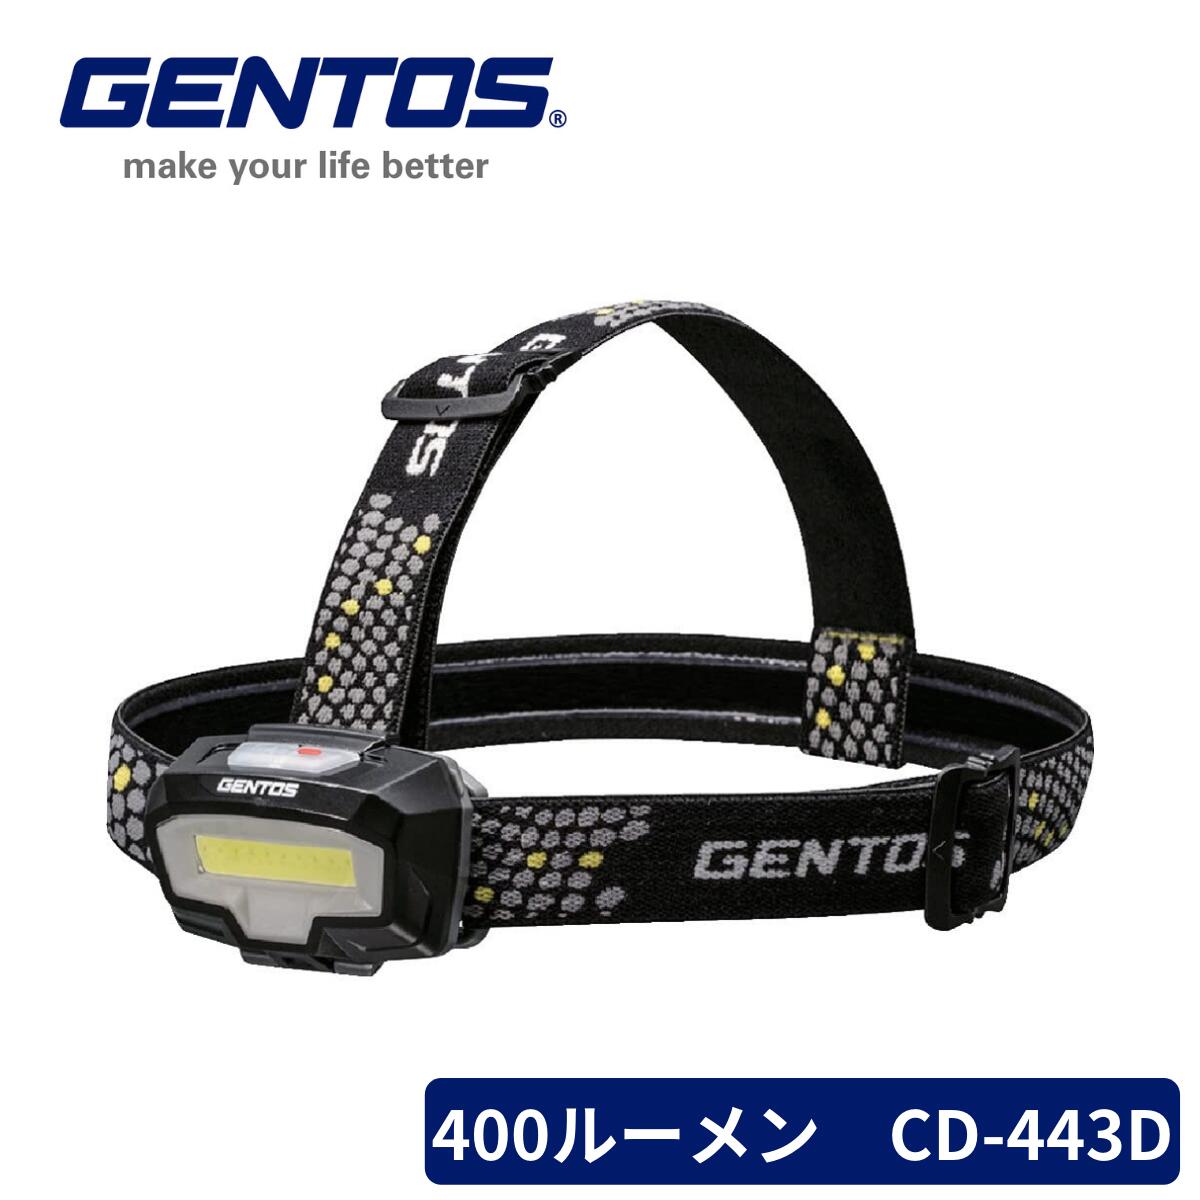 【楽天スーパーSALE】GENTOS LED ヘッドライト CB-443D コンブレーカー 単4電池式 400ルーメン 2色 白/赤 父の日 早割